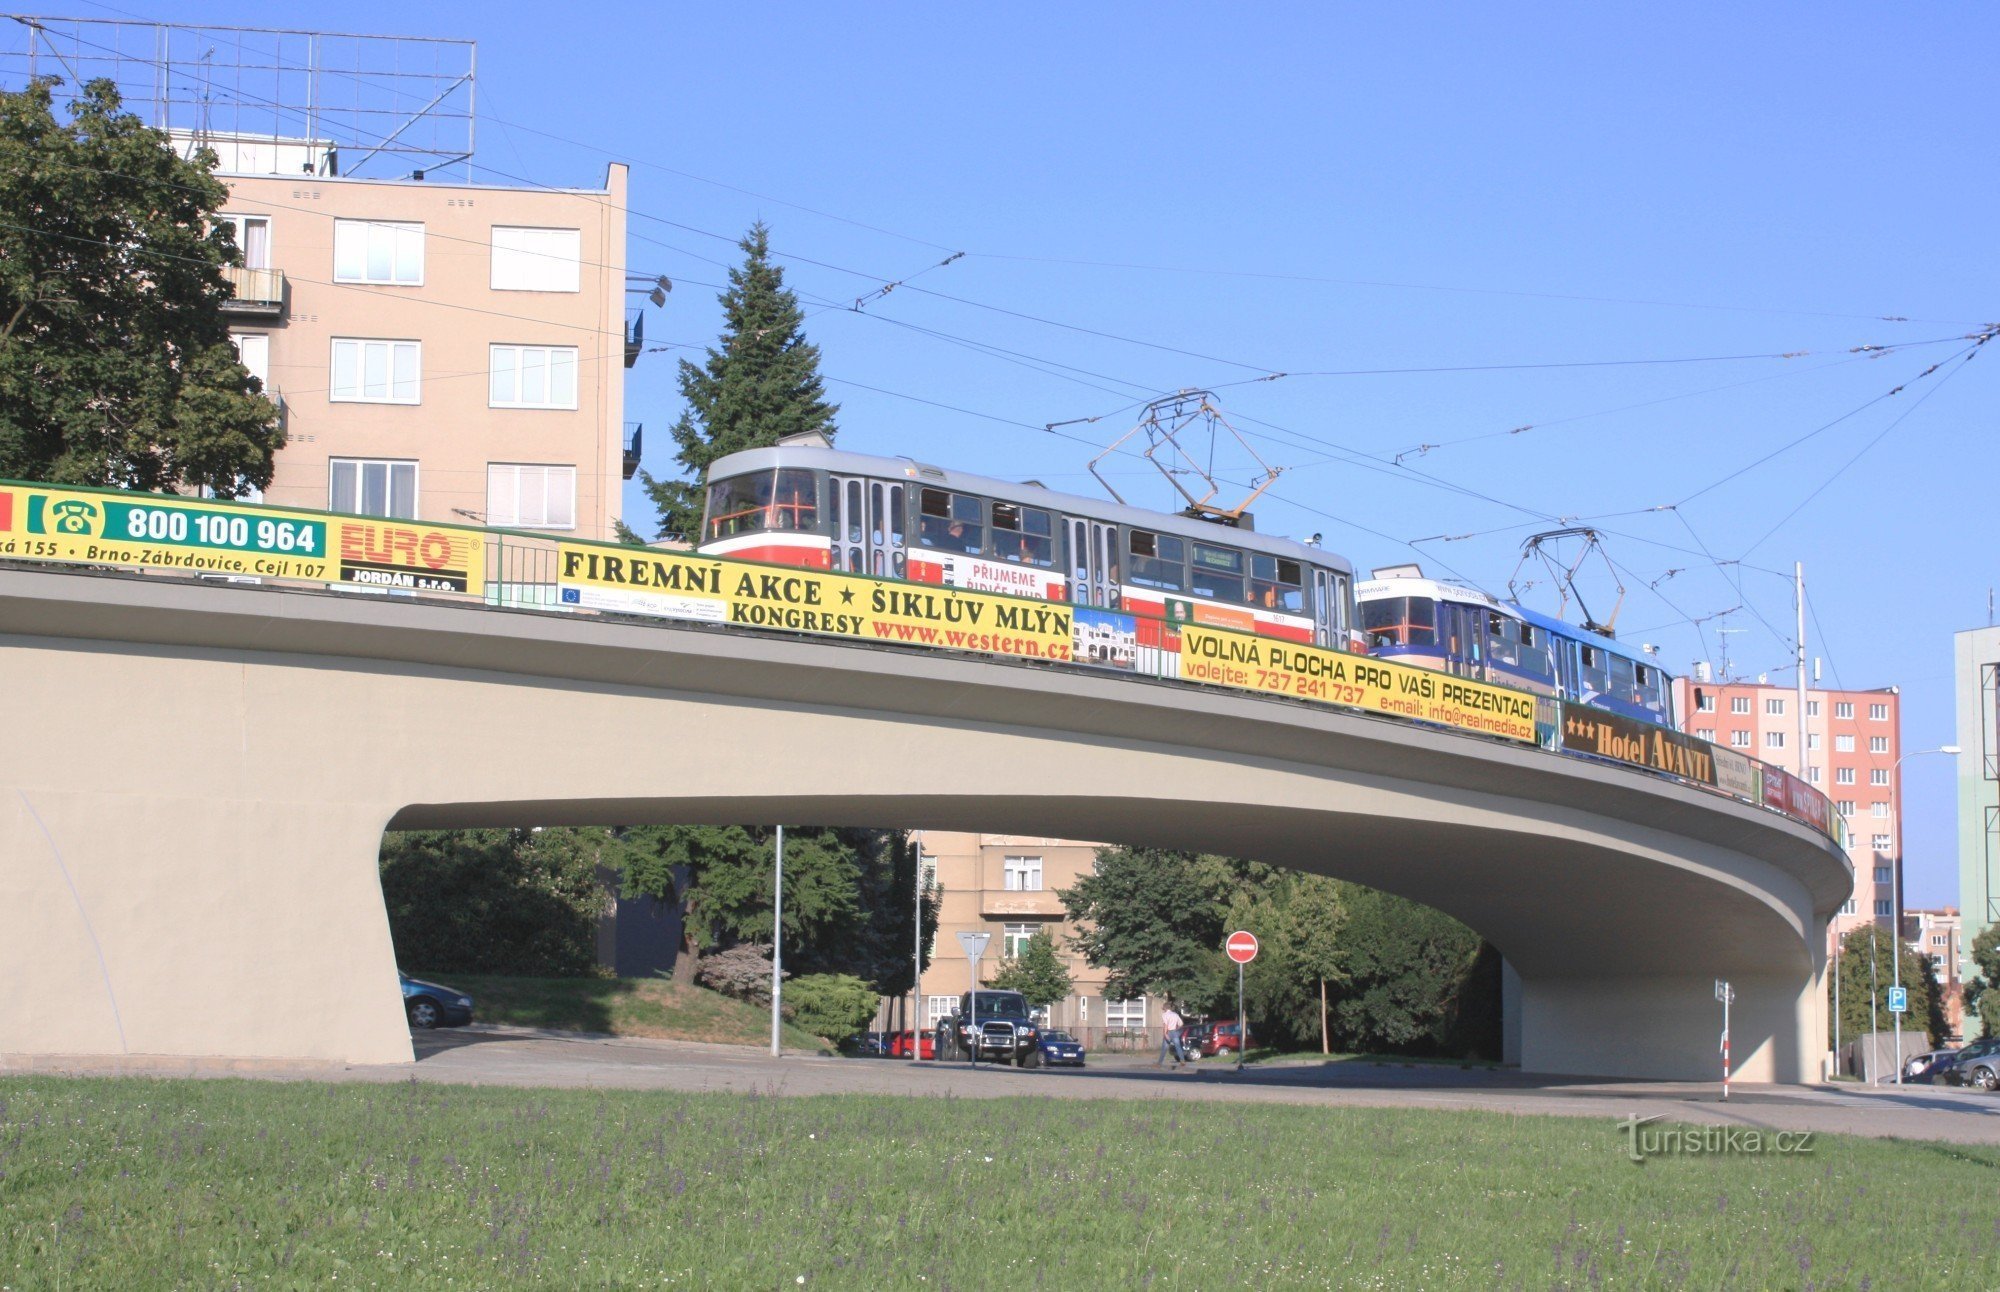 Brno-Pisárky - most tramwajowy